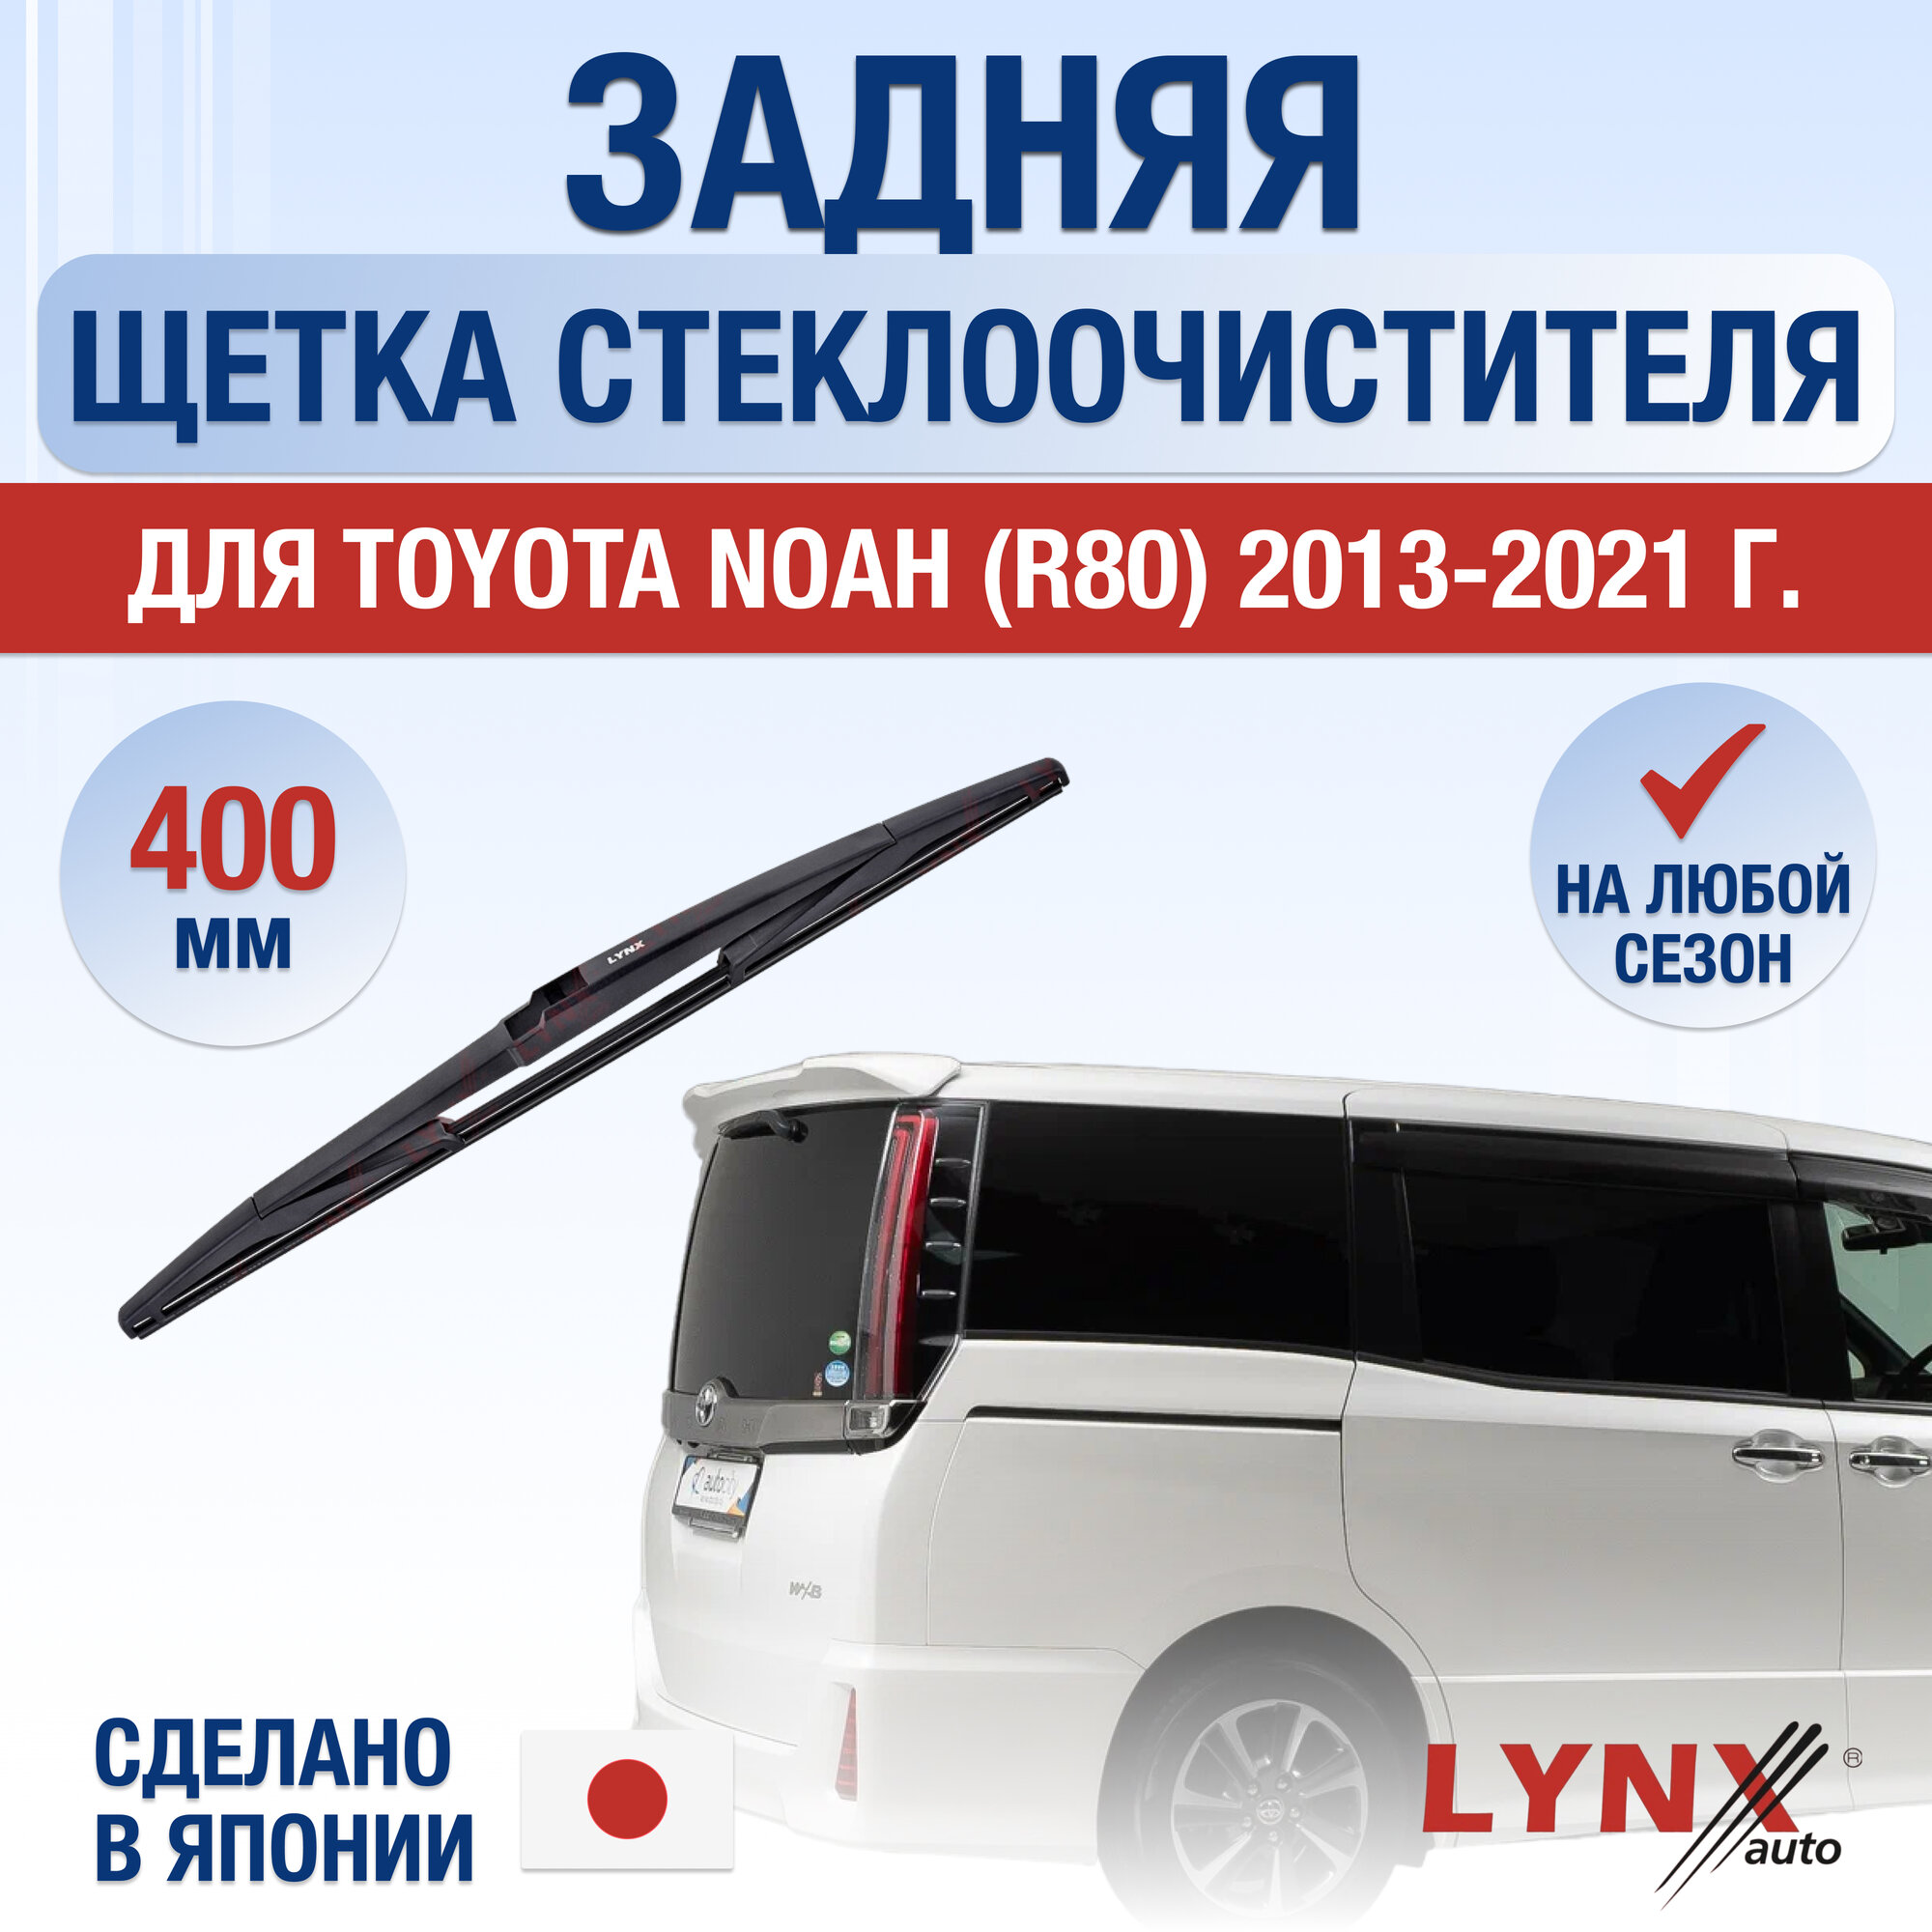 Задняя щетка стеклоочистителя для Toyota Noah (R80) / 2013 2014 2015 2016 2017 2018 2019 2020 2021 / Задний дворник 400 мм Тойота Ноа